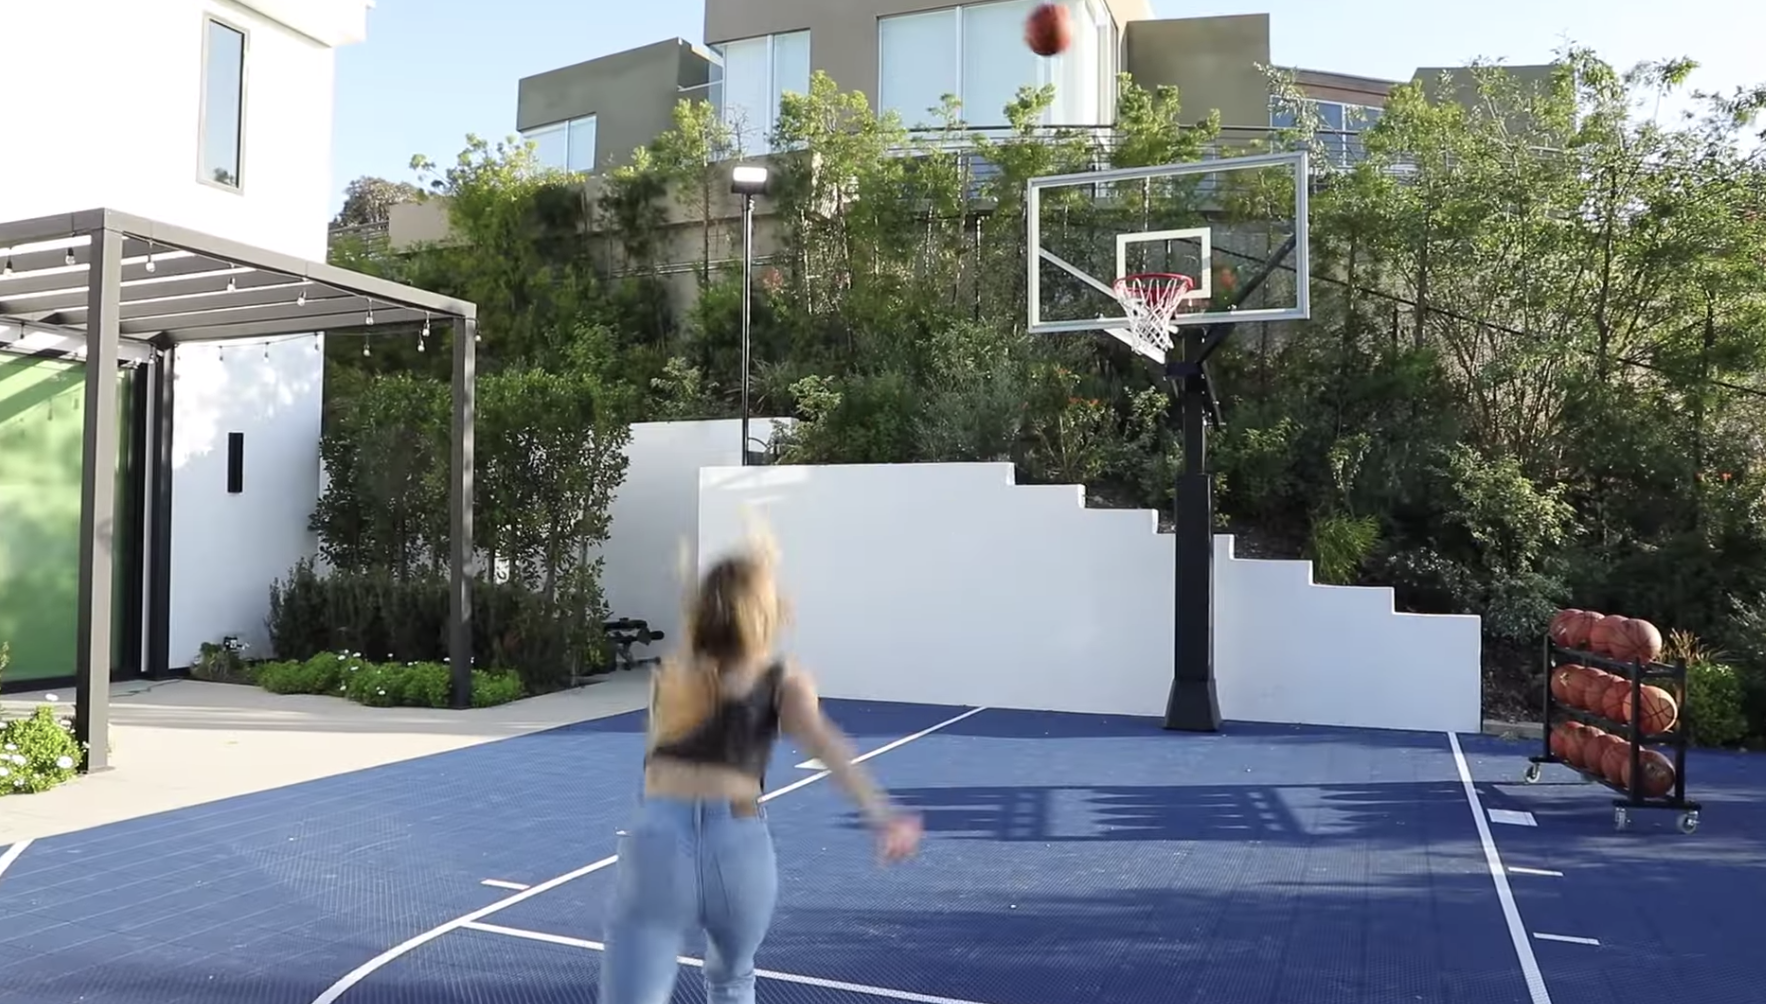 Girl throwing a basketball